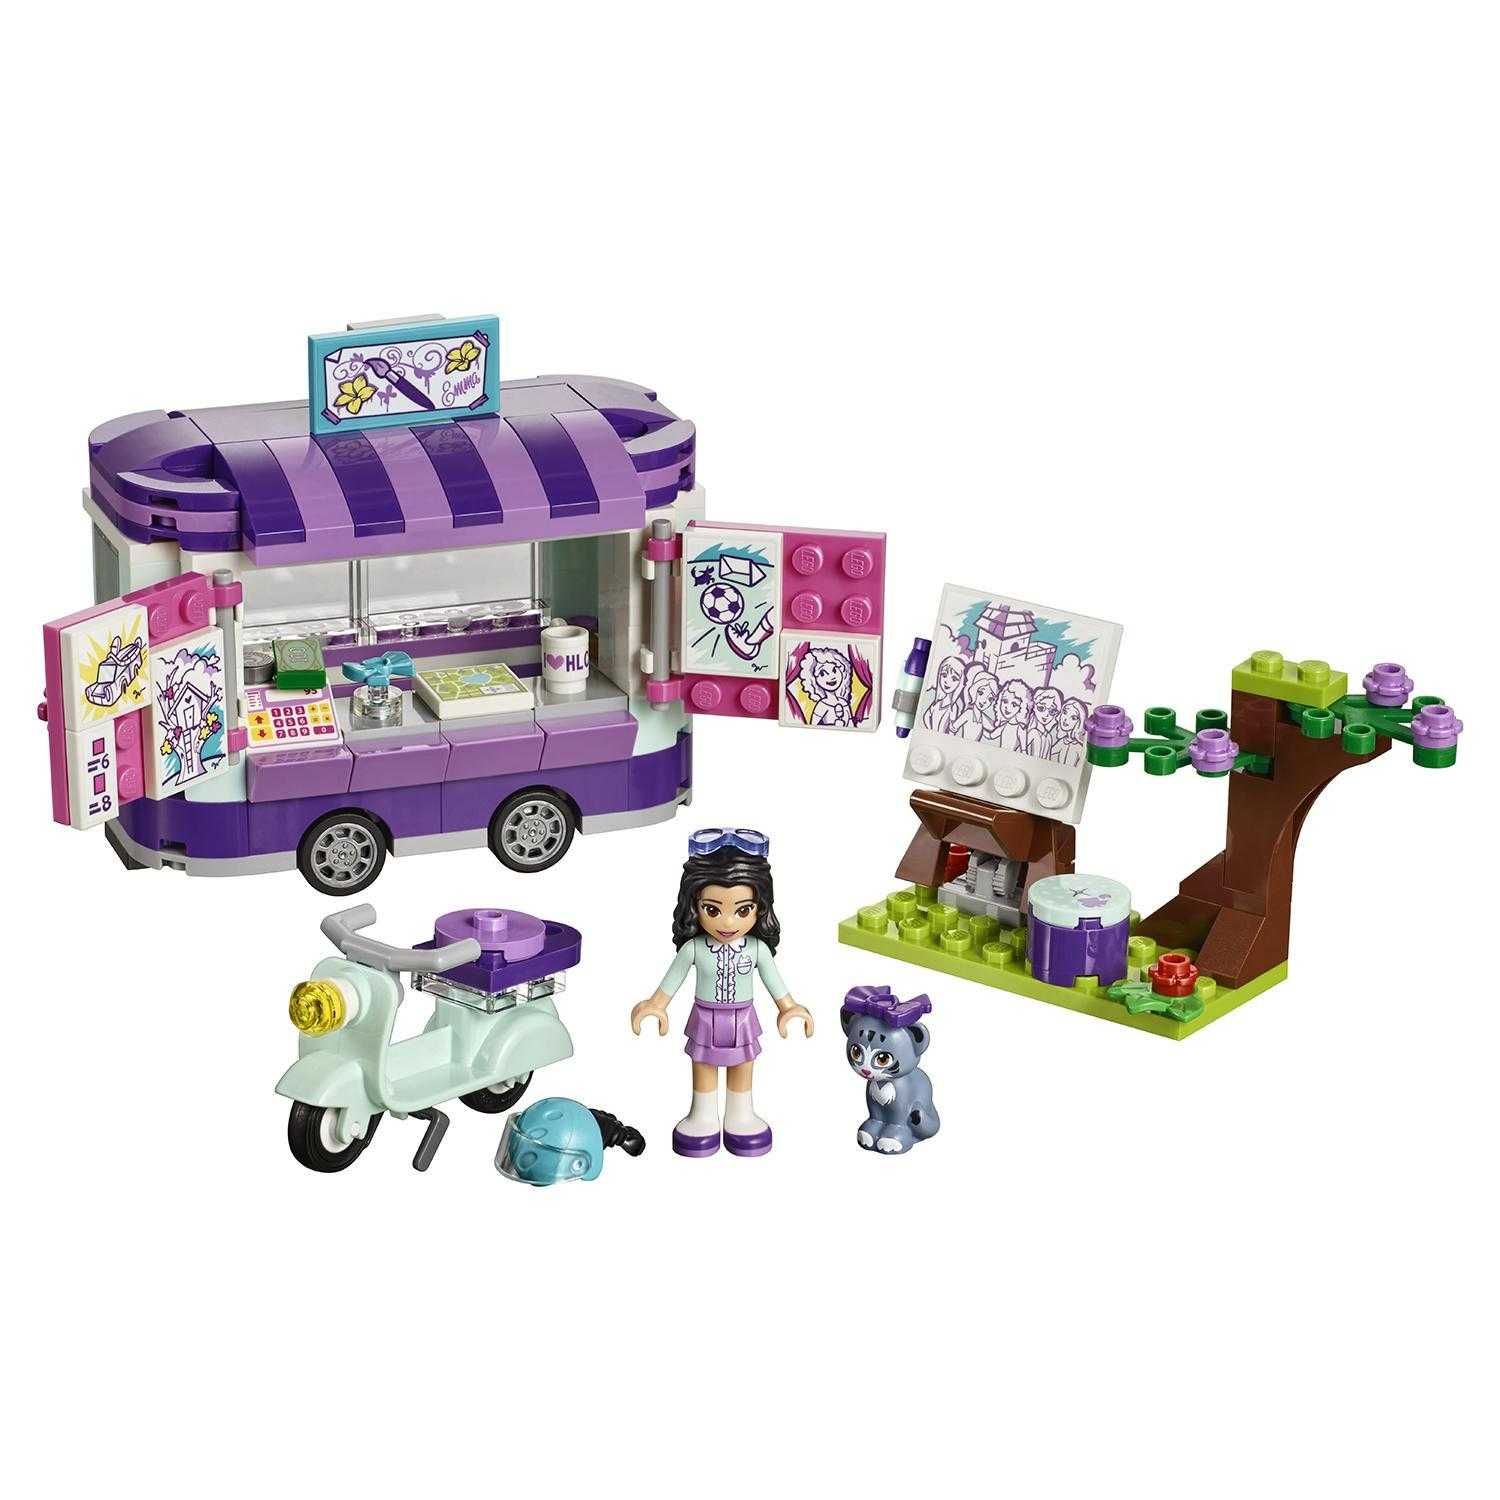 LEGO Friends: Передвижная творческая мастерская Эммы 41332 игрушка